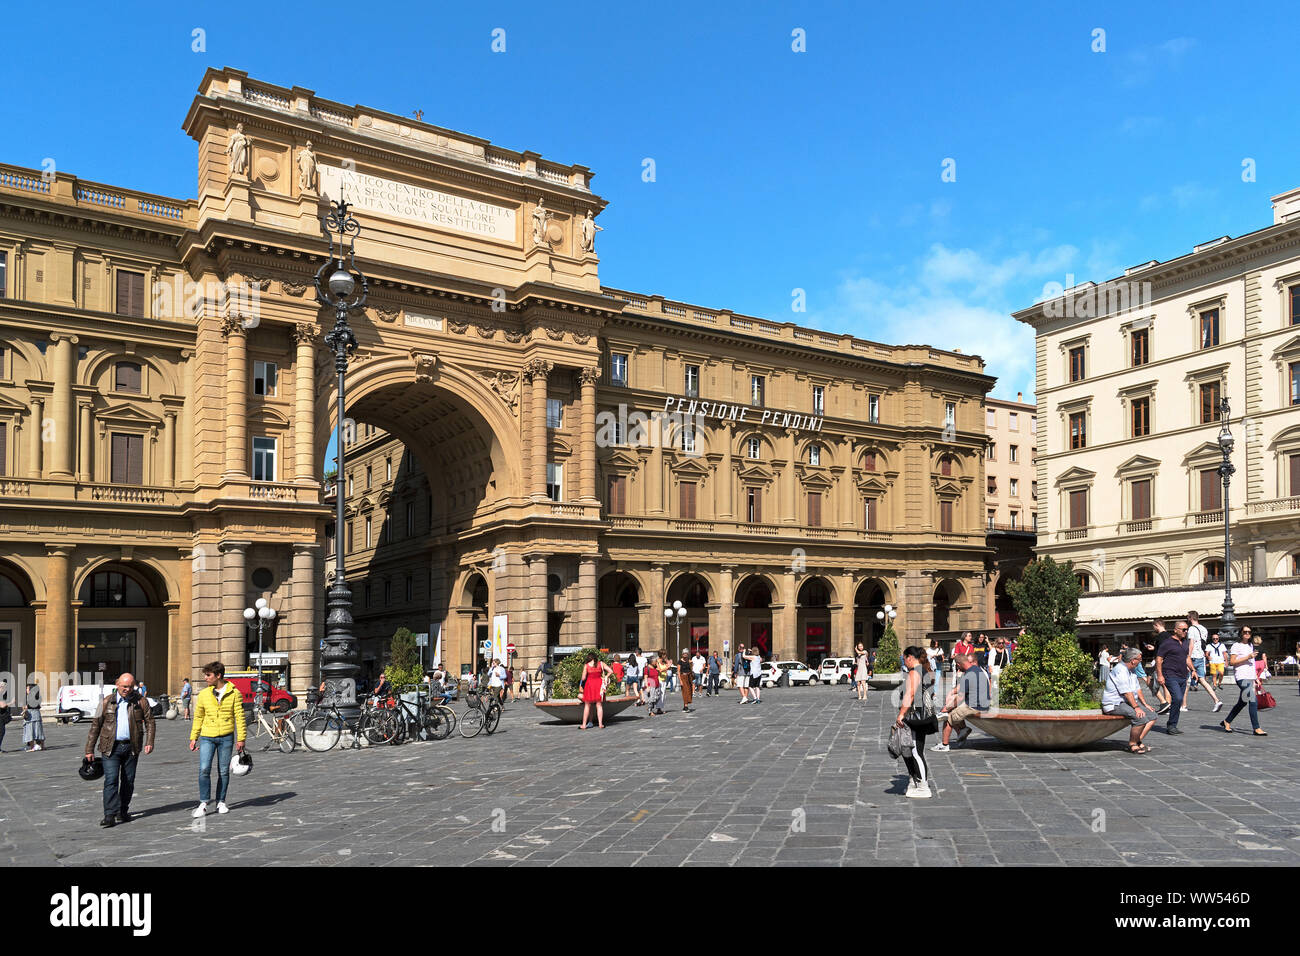 L'arche du triomphe sur la piazza della republica dans la ville de florence, toscane, italie. Banque D'Images